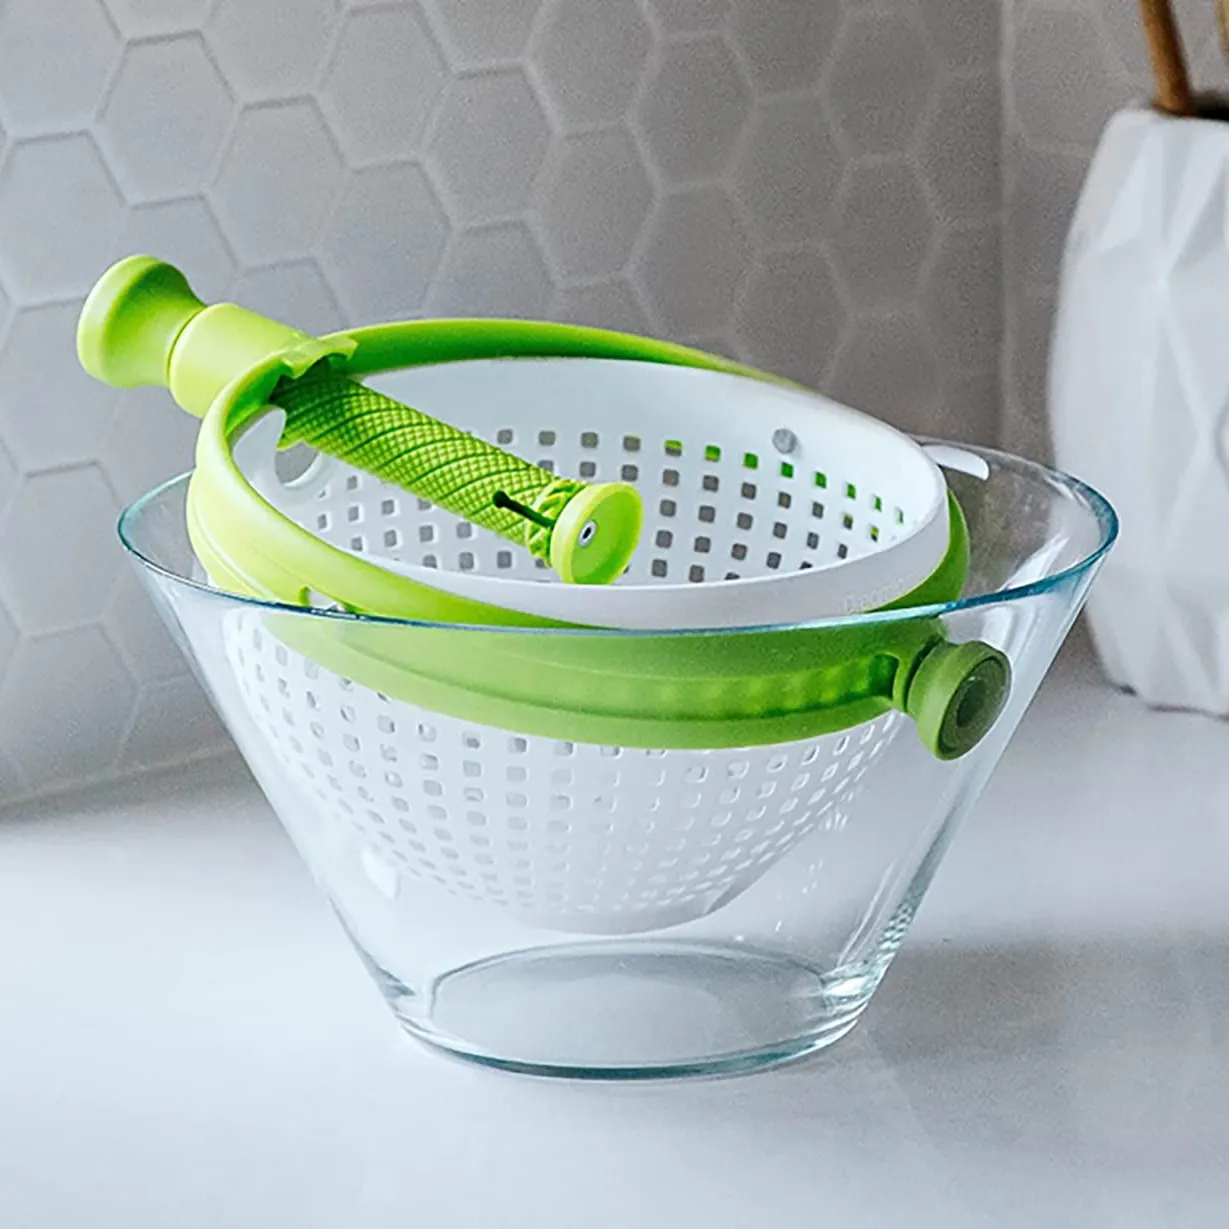 Salad Spinner Fruit Vegetable Dryer Lettuce Greens Washer Drain Crisper Strainer Spinning Colander with Handle Kitchen Gadgets